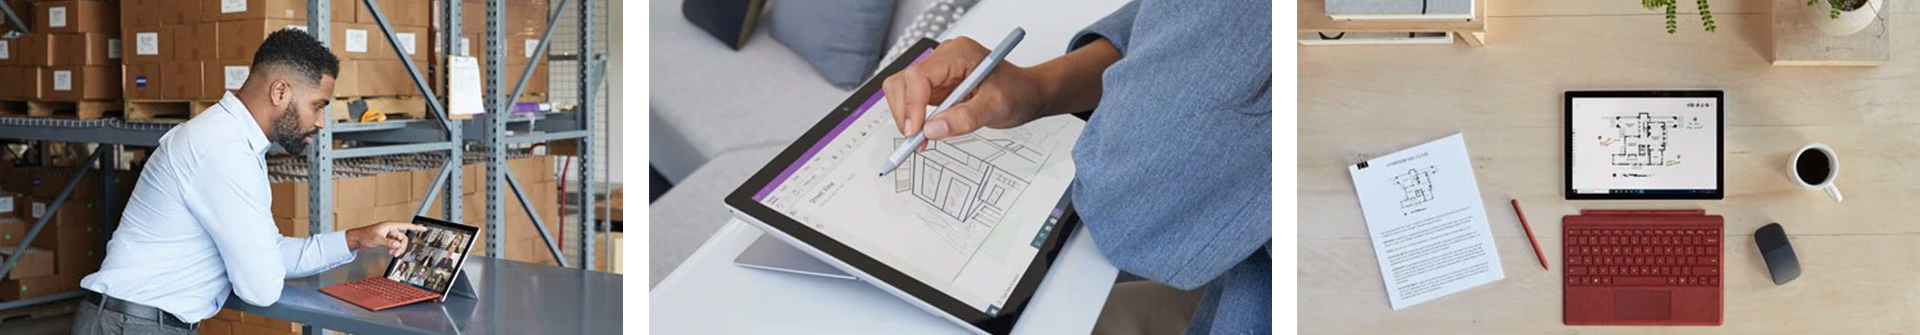 Surface Pro 7 Plus - виртуальные встречи буквально оживают